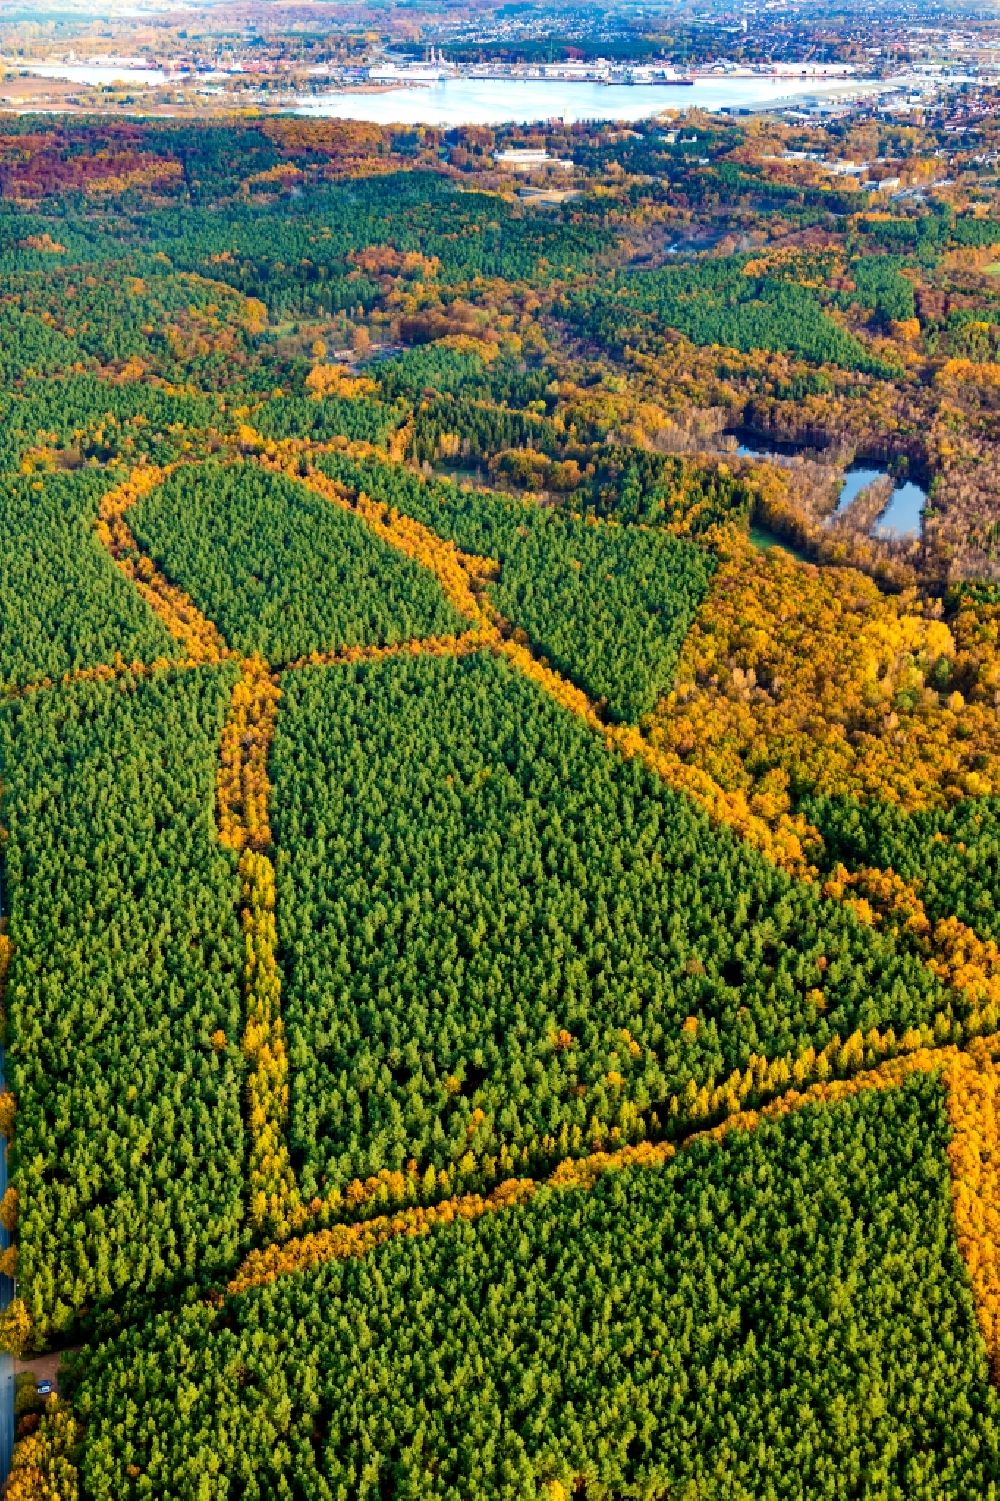 Luftbild Lübeck - Herbstluftbild Marlin Brandenbaum Forst Engel Abzeichnung durch die Forstwege in Lübeck im Bundesland Schleswig-Holstein, Deutschland